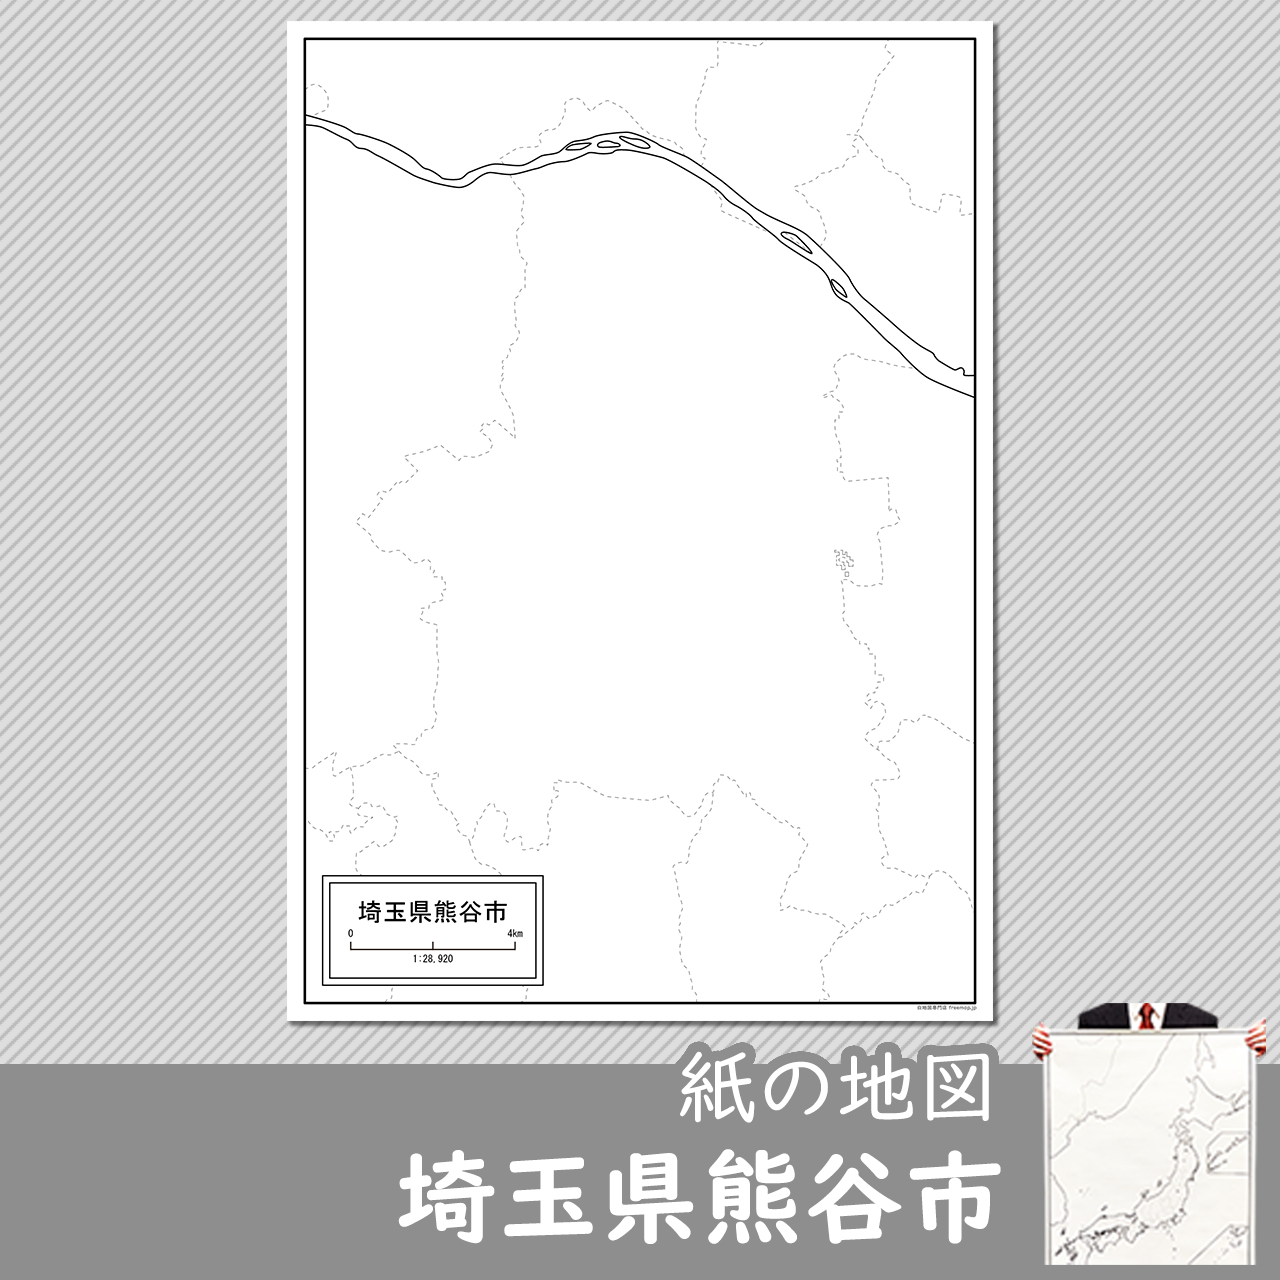 埼玉県熊谷市の紙の白地図